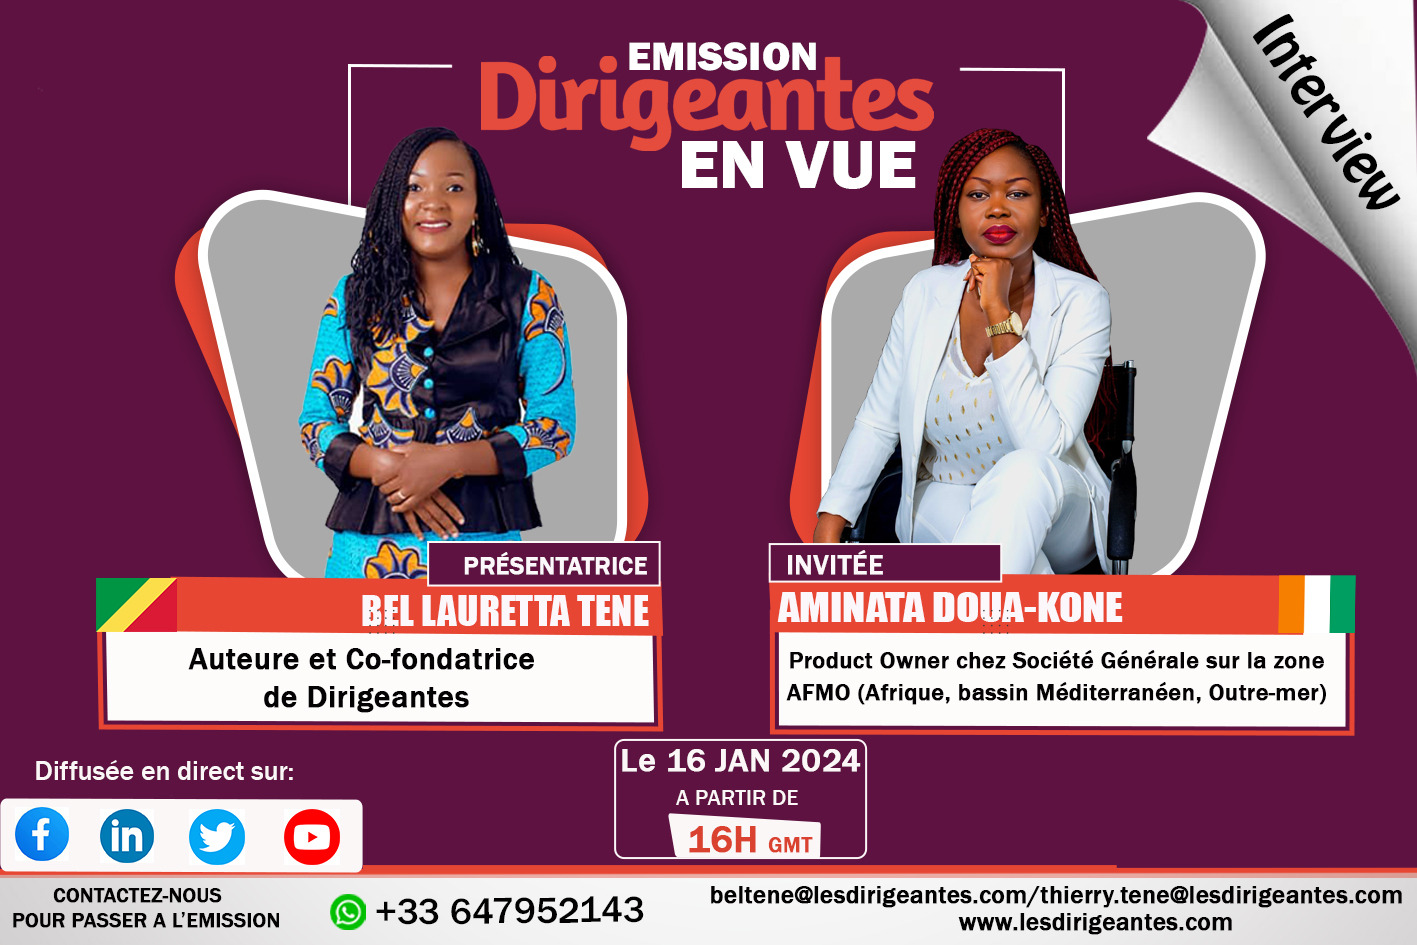 Interview Aminata KONE, Product Owner chez Société Générale sur la zone AFMO (Afrique, bassin Méditerranéen, Outre-mer)